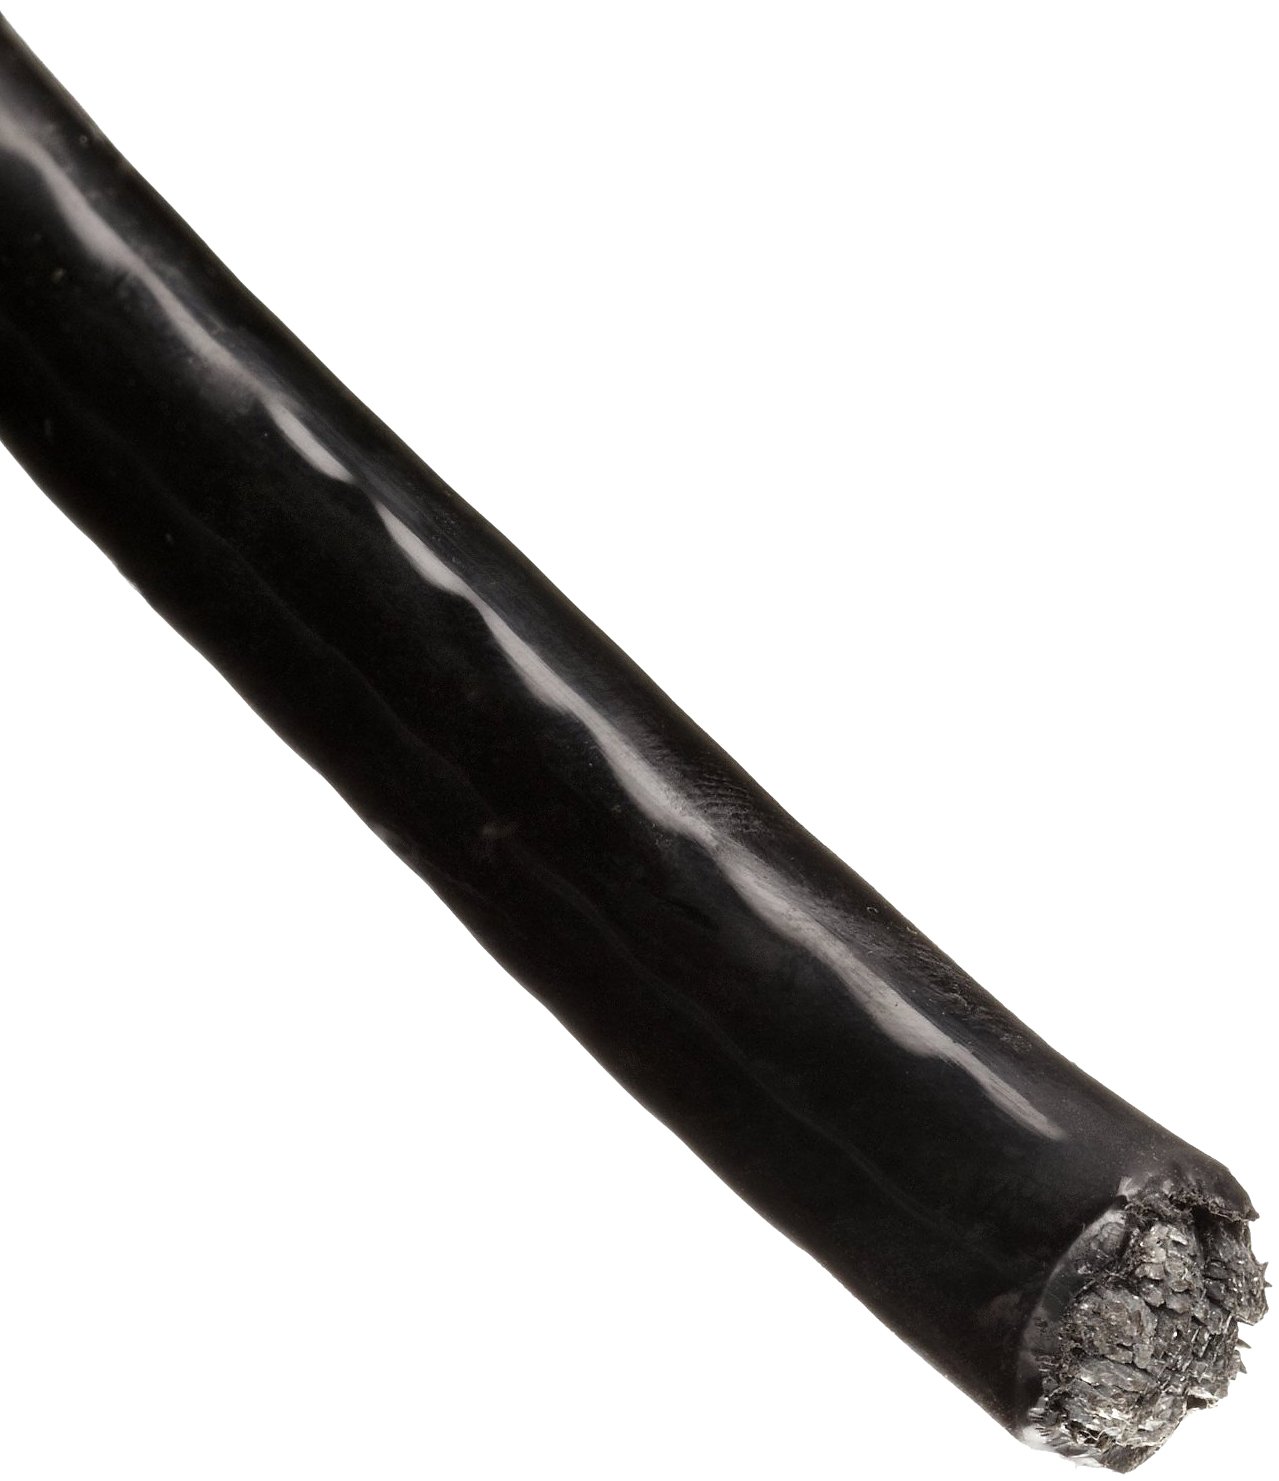 Трос в ПВХ оболочке 6 мм непрозрачный черный - фото